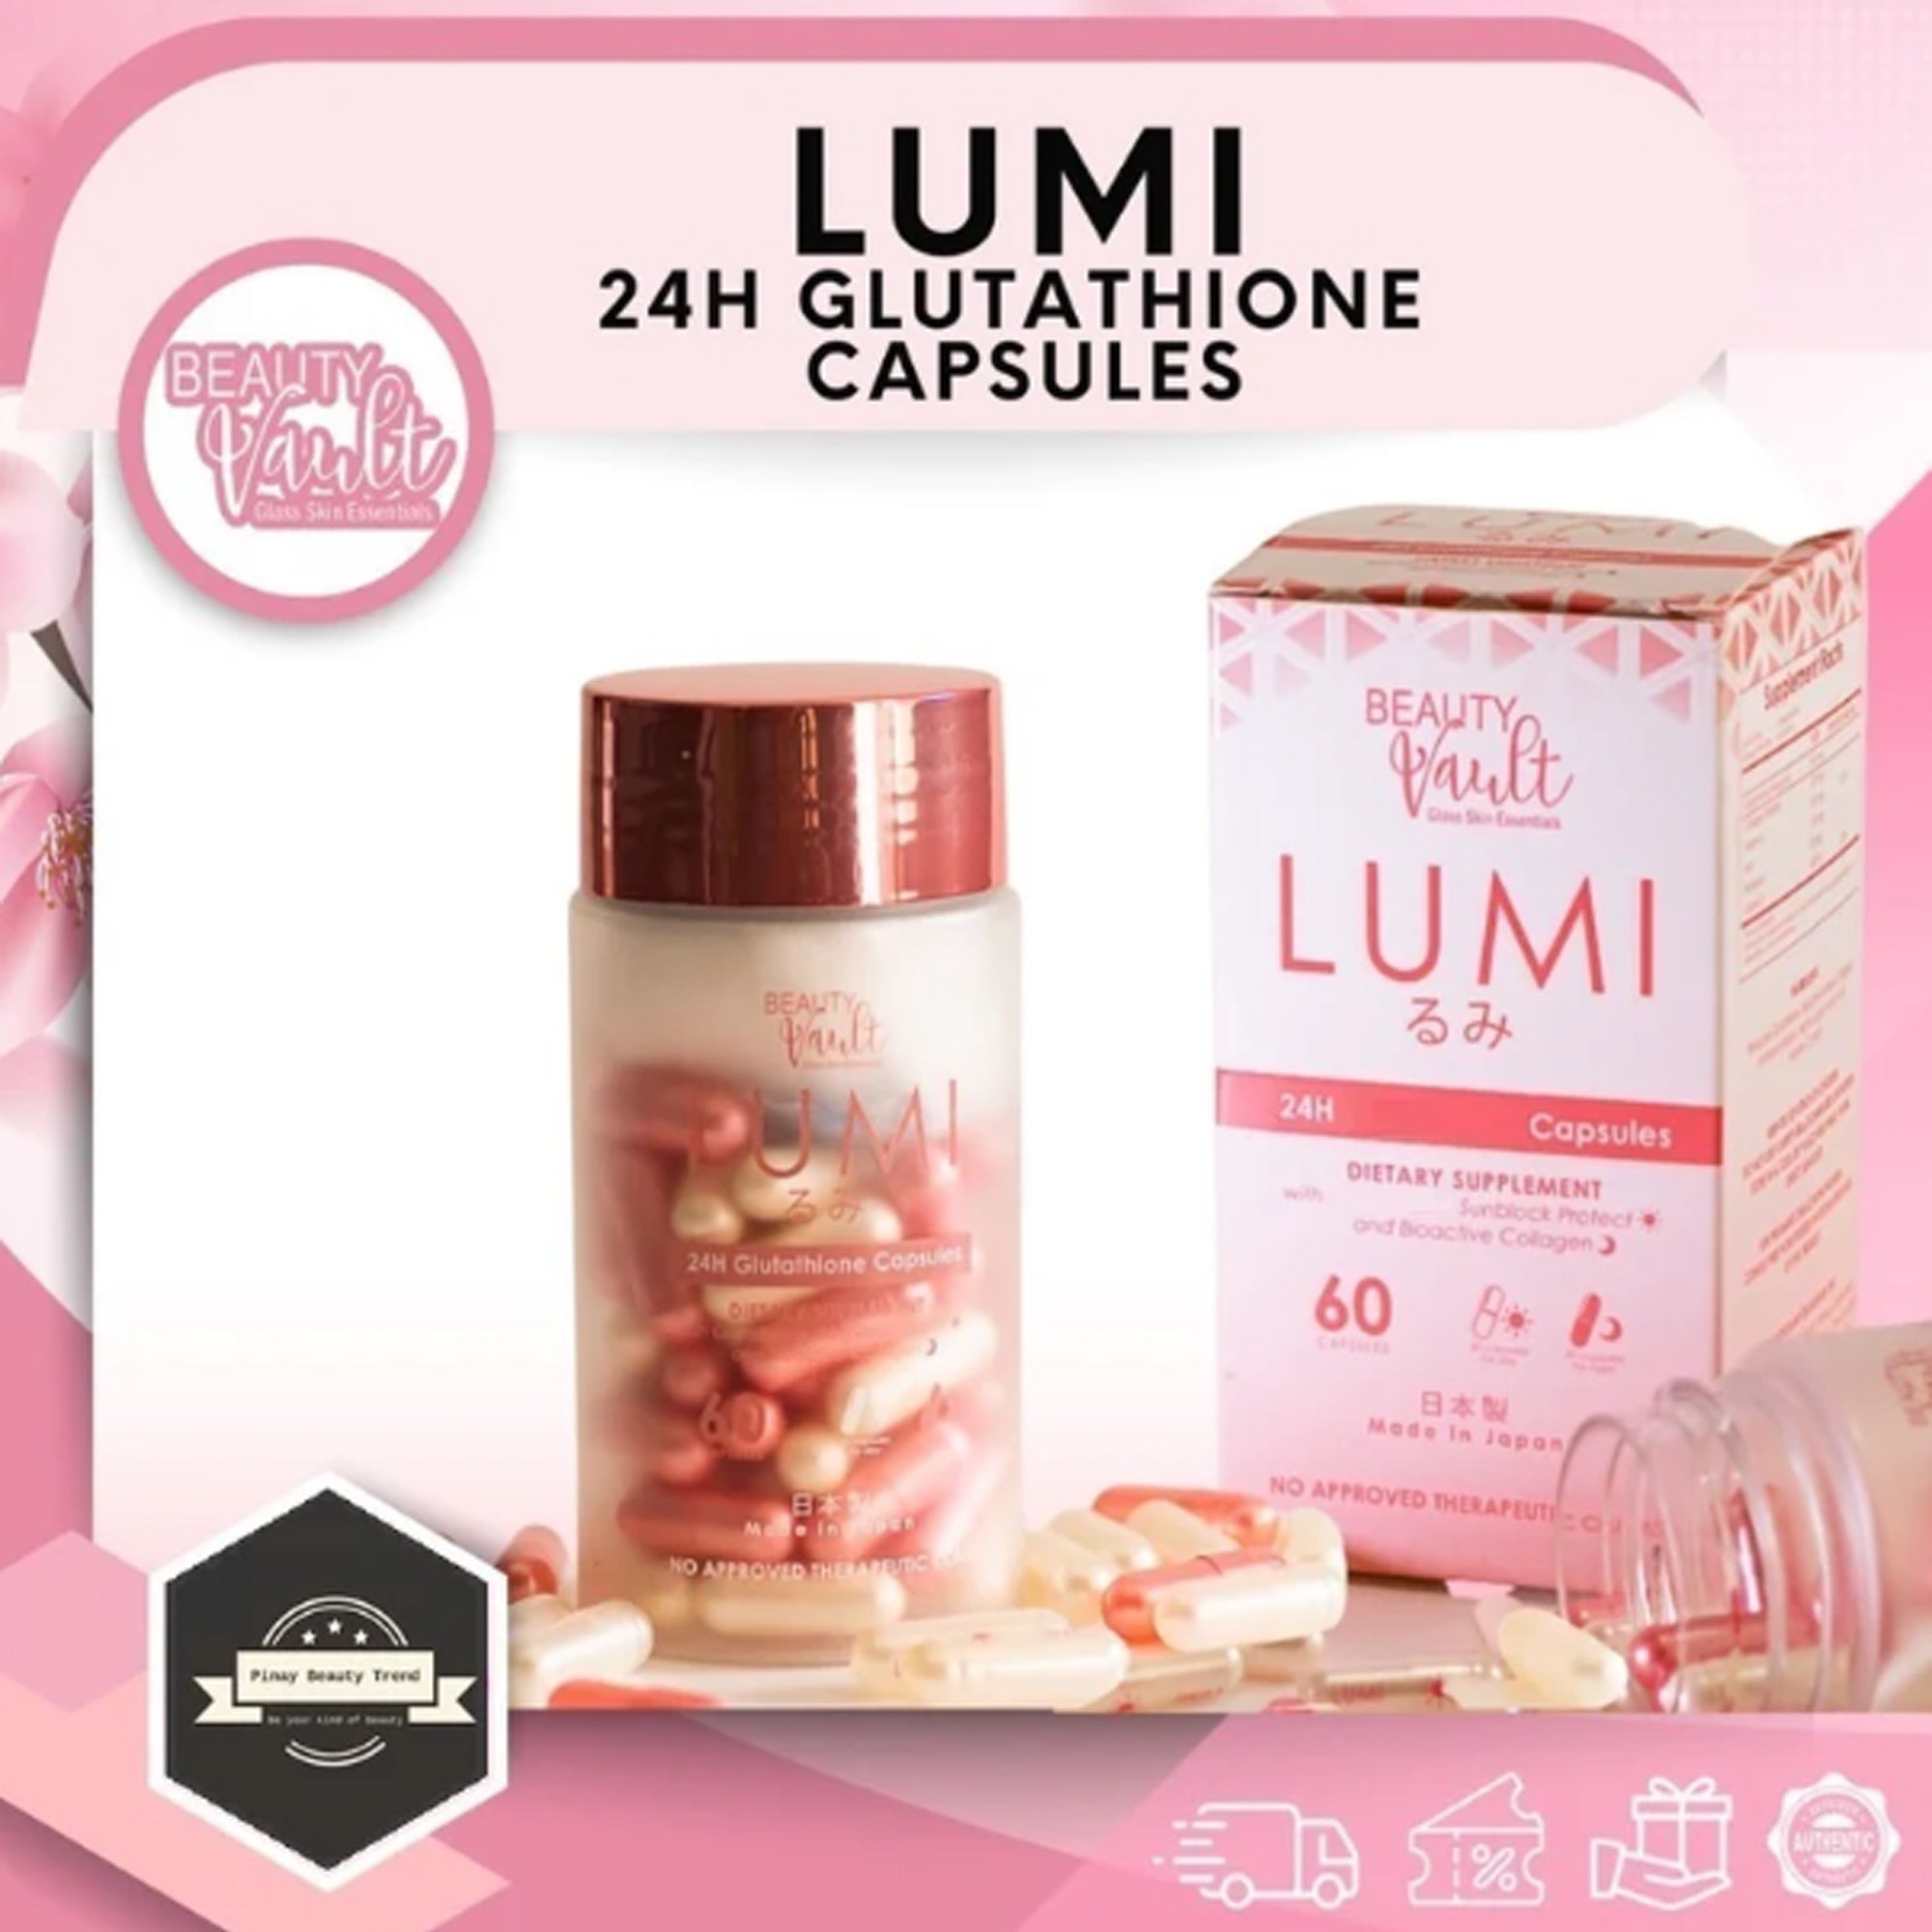 Beauty Vault LUMI 24H Glutathione Capsules